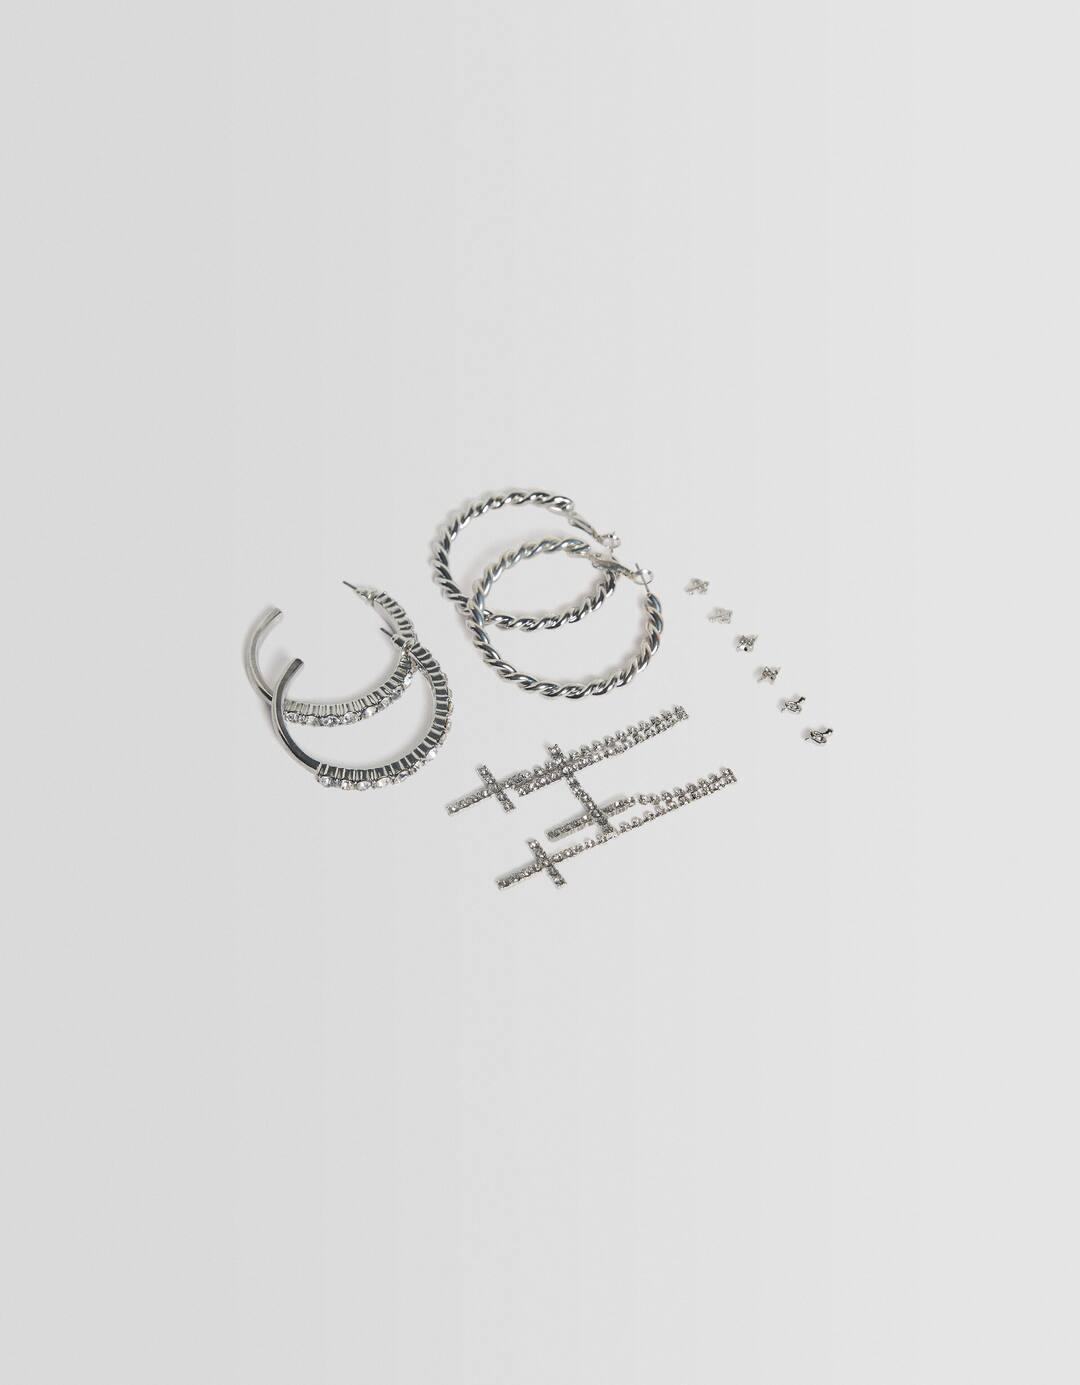 Set of 6 pairs of rhinestone cross earrings